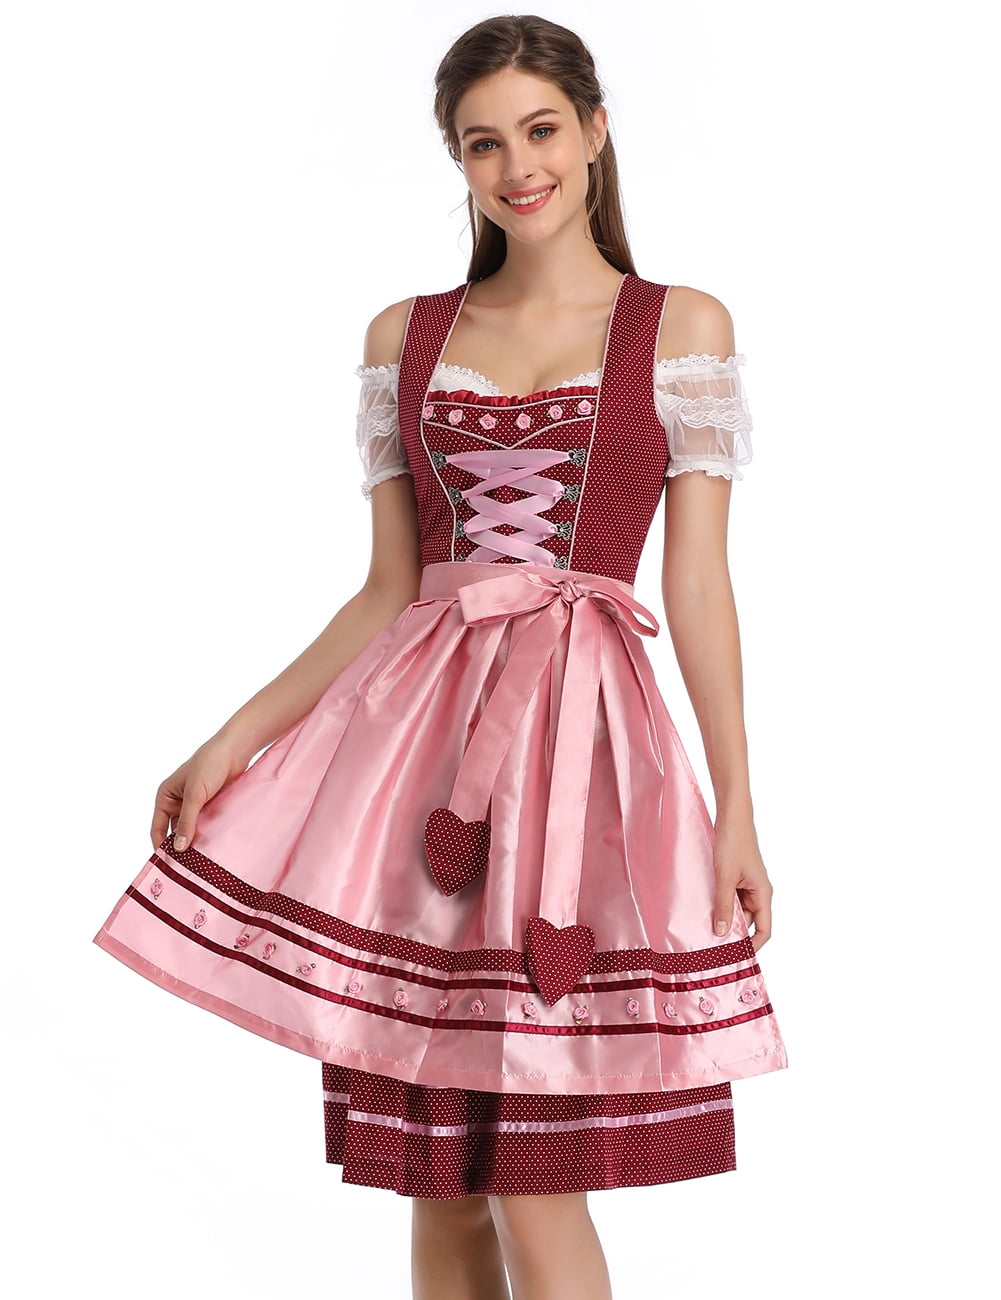 Yiwa Womens Dirndl Dress Bavarian Oktoberfest Festival Costumes Glory Star Three PCS Suit